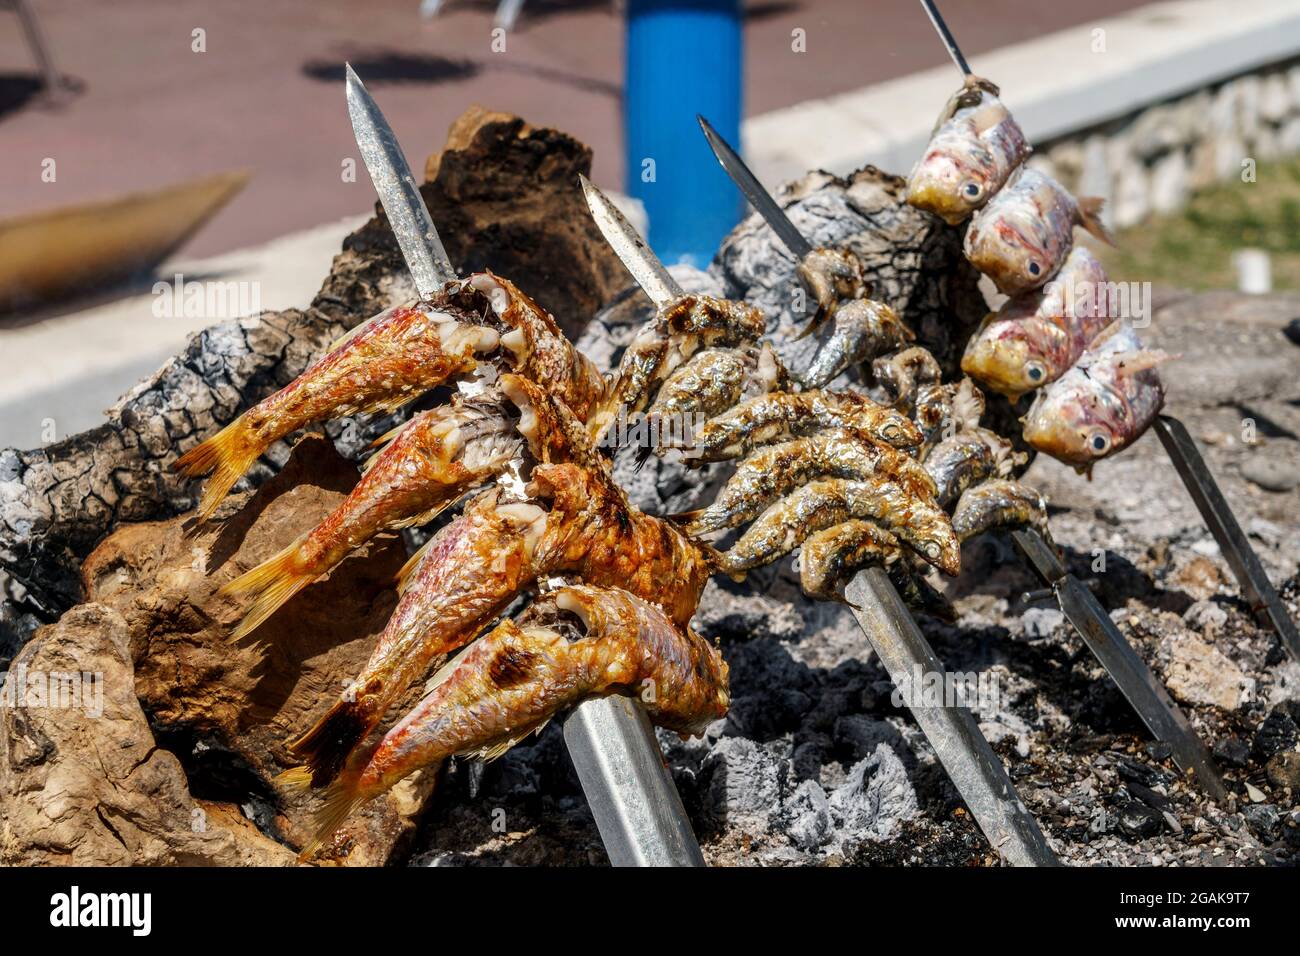 Fische auf dem Grill am Strand von Malaga, Costa del Sol, Provinz Malaga, Andalusien, Spanien, Europa, Stock Photo